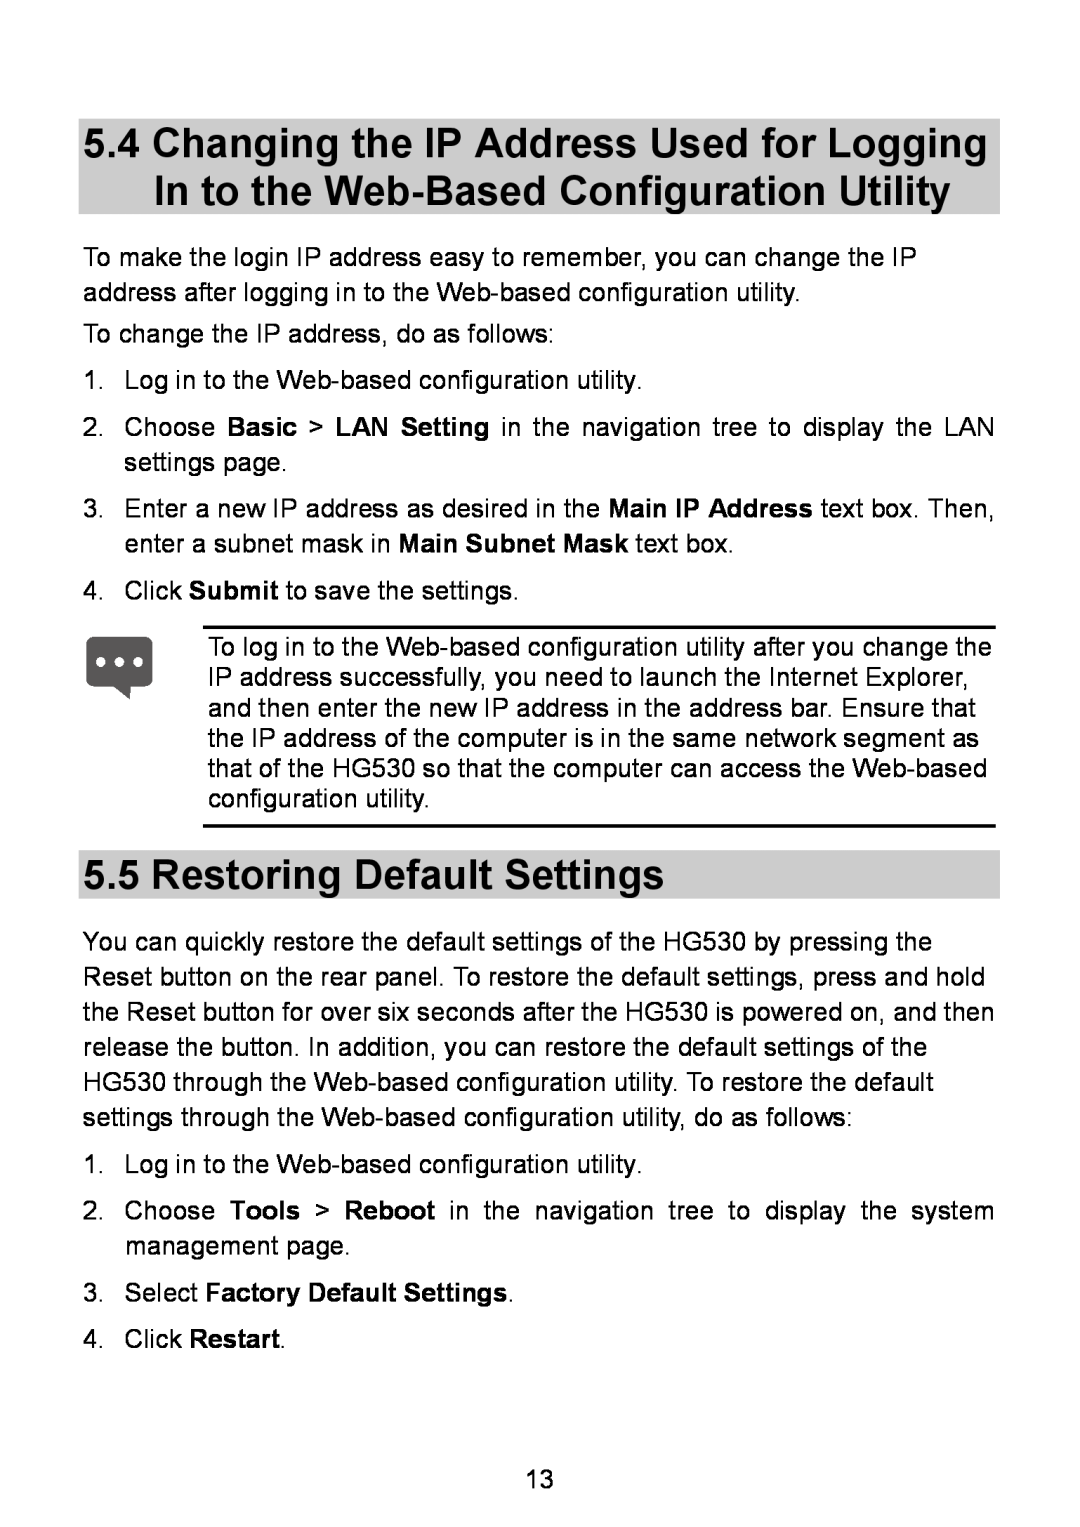 Huawei HG530 manual Restoring Default Settings, Select Factory Default Settings 